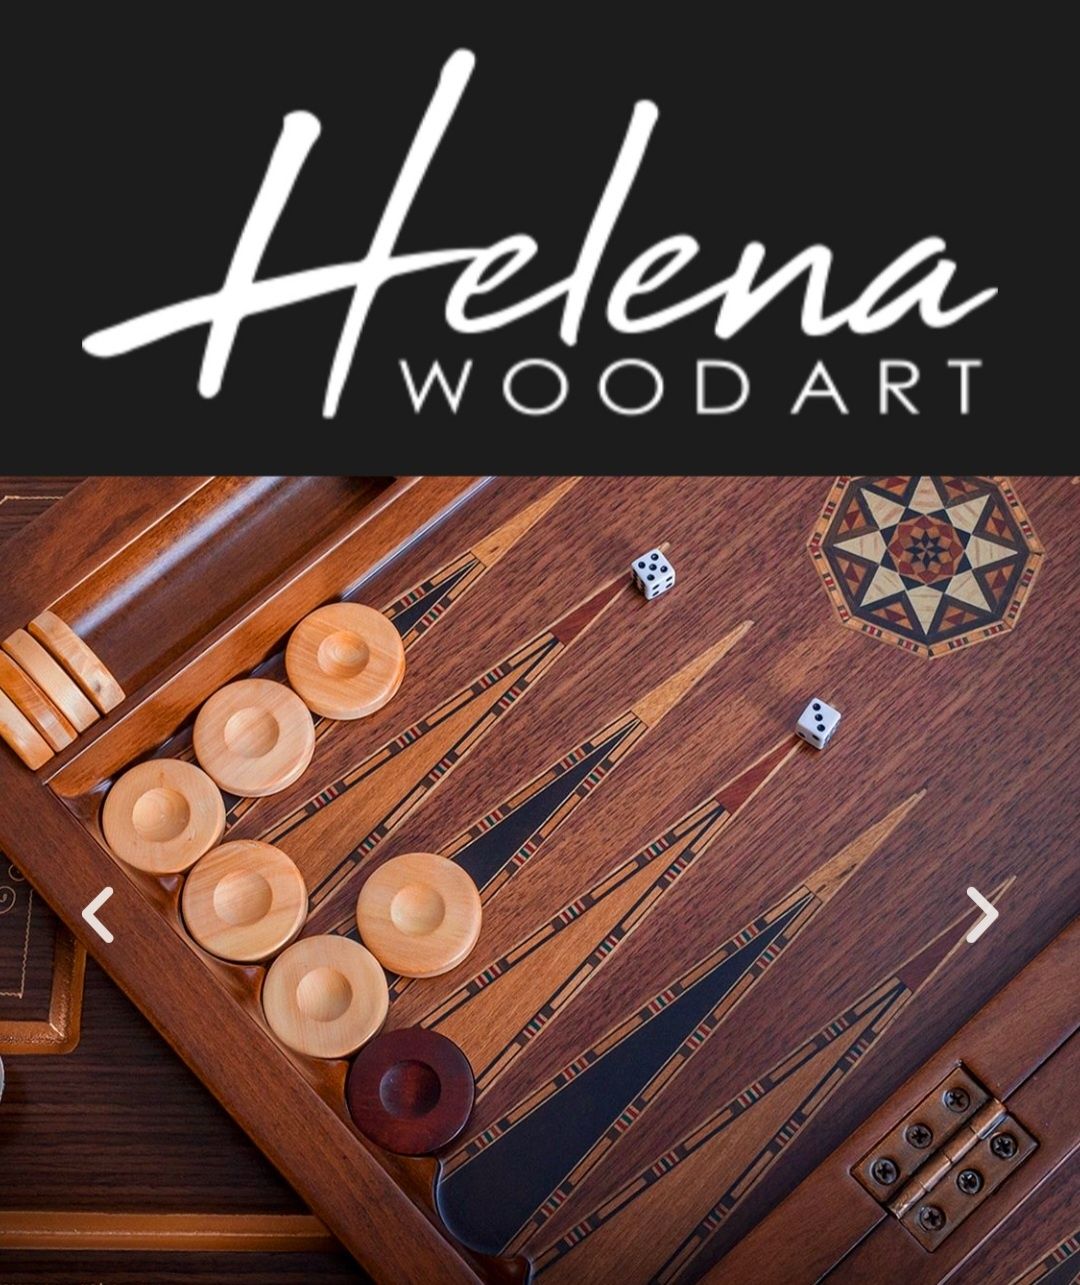 Продам турецкие, оригинальные нарды "HELENA WOOD ART".